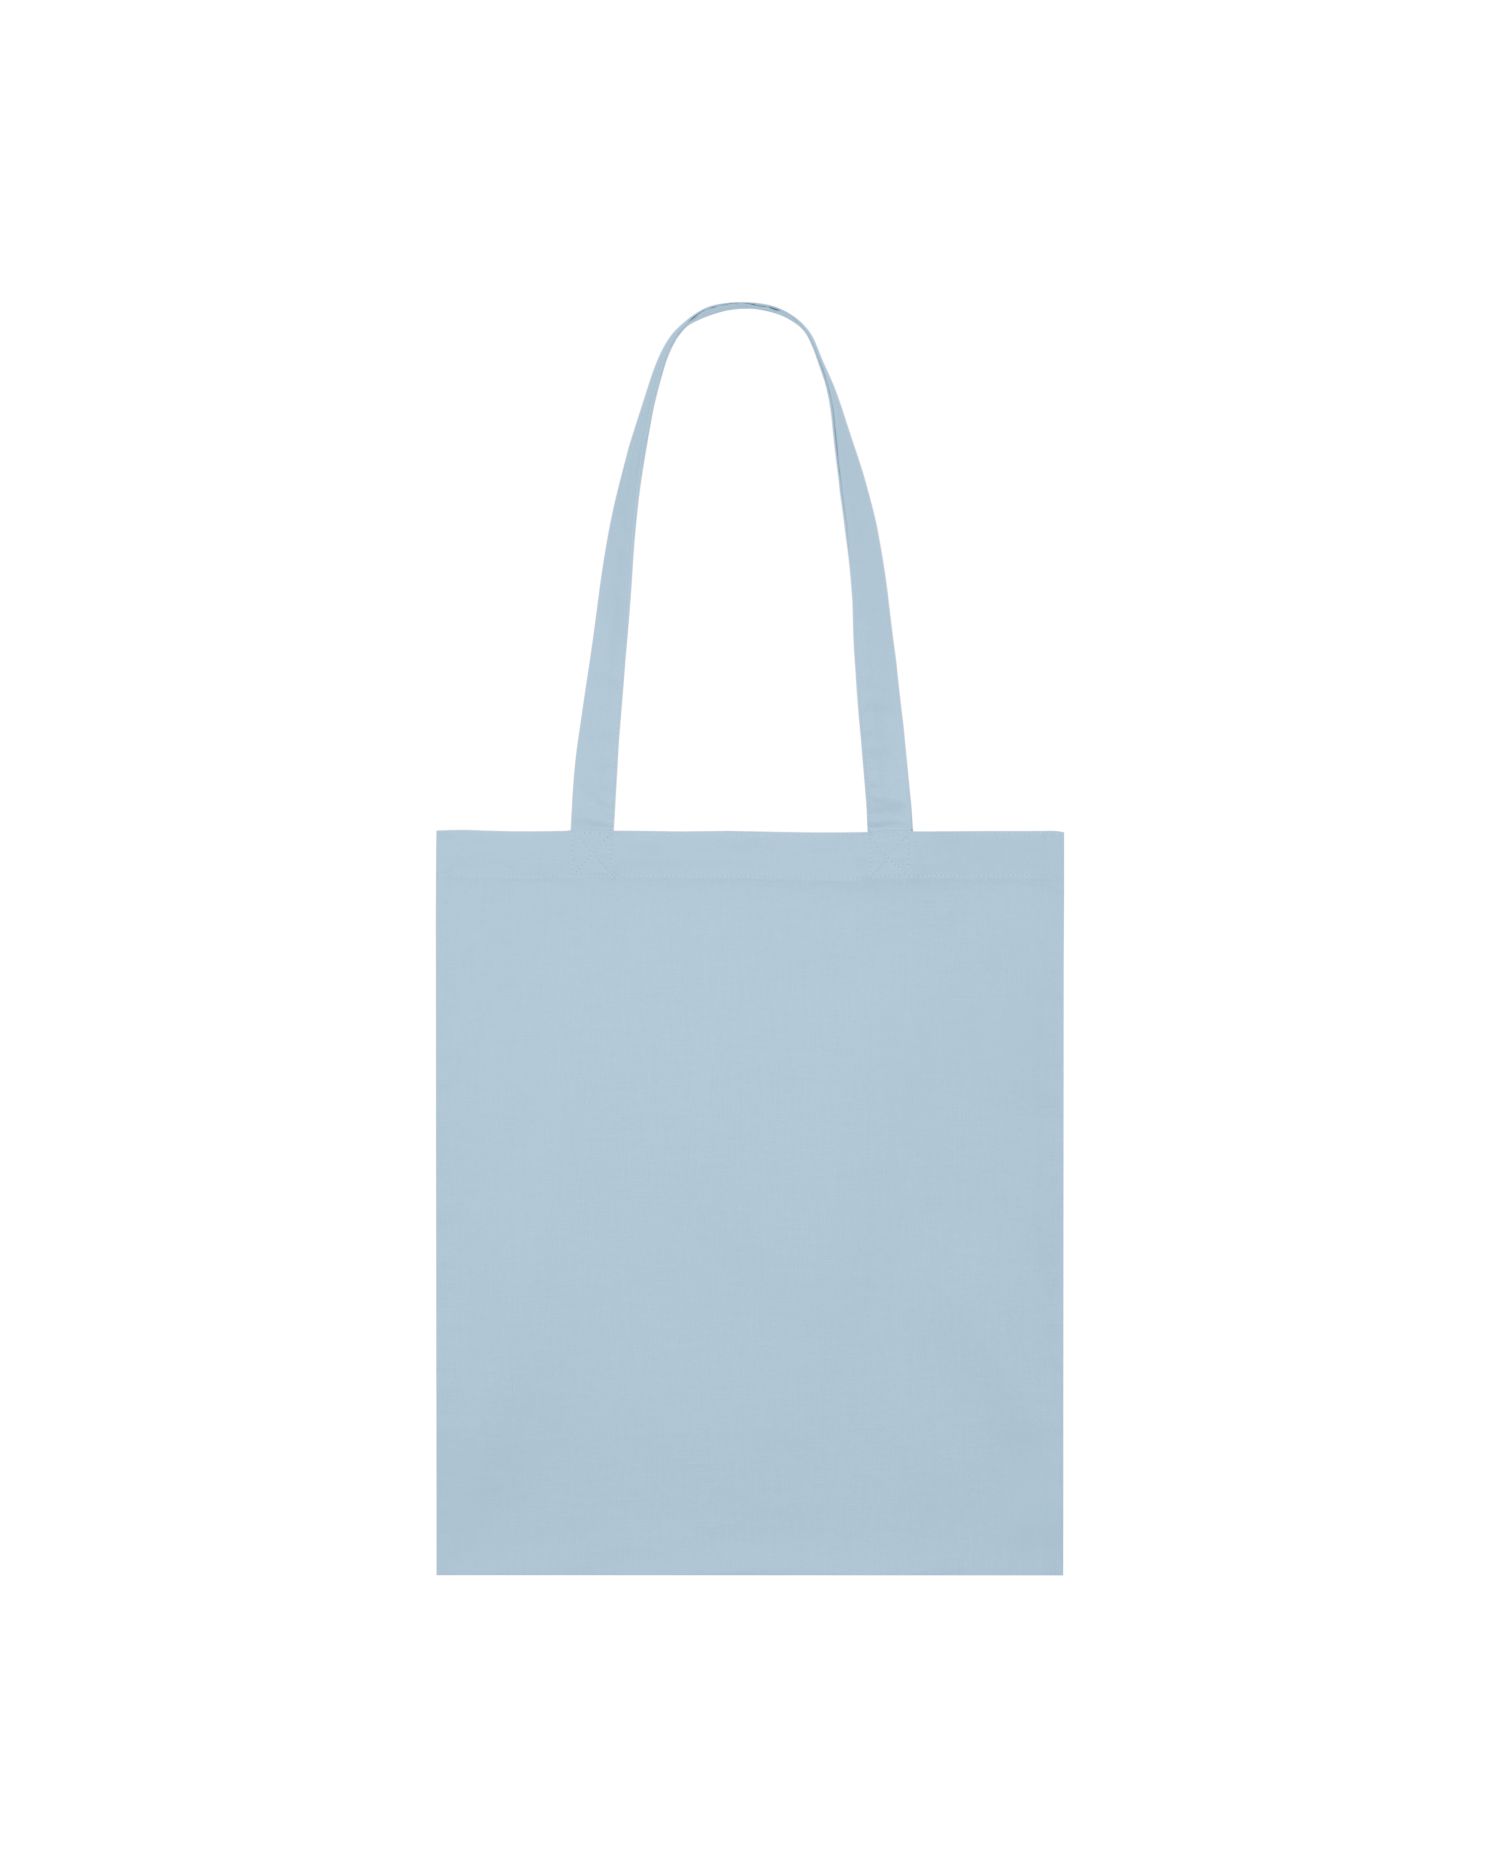  Light Tote Bag in Farbe Sky blue